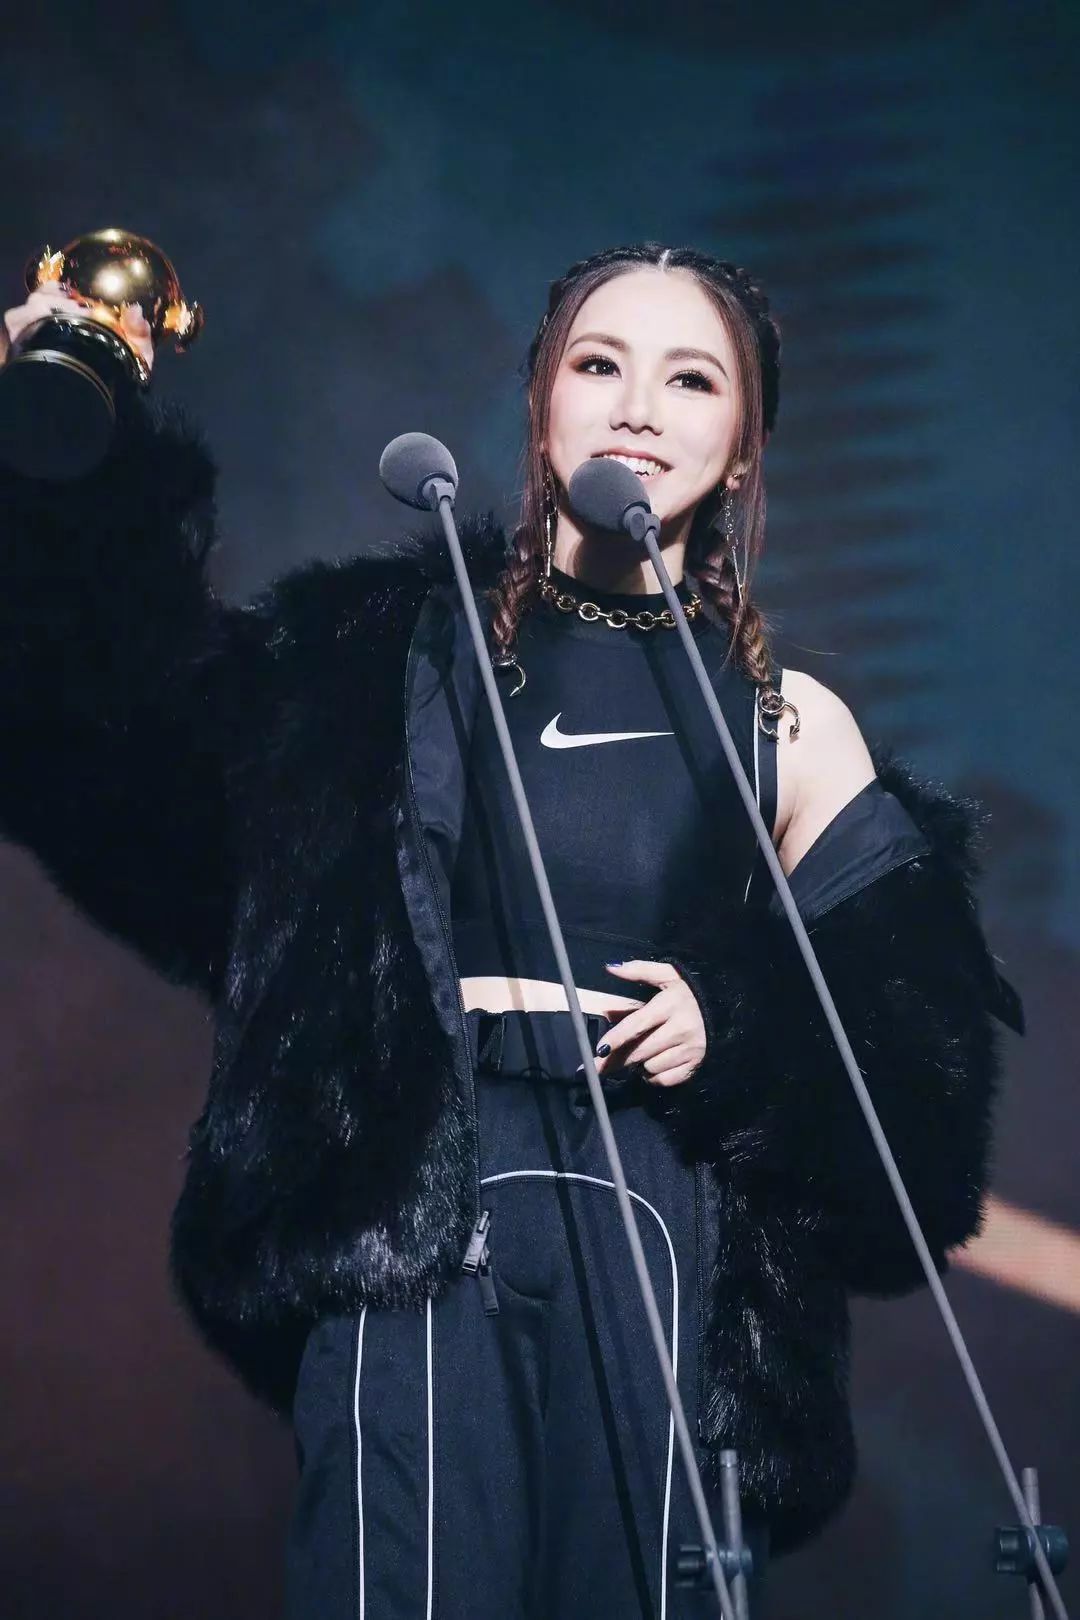 在《中国新说唱》节目里,邓紫棋说过想给艾热唱hook,获奖过后的她换上